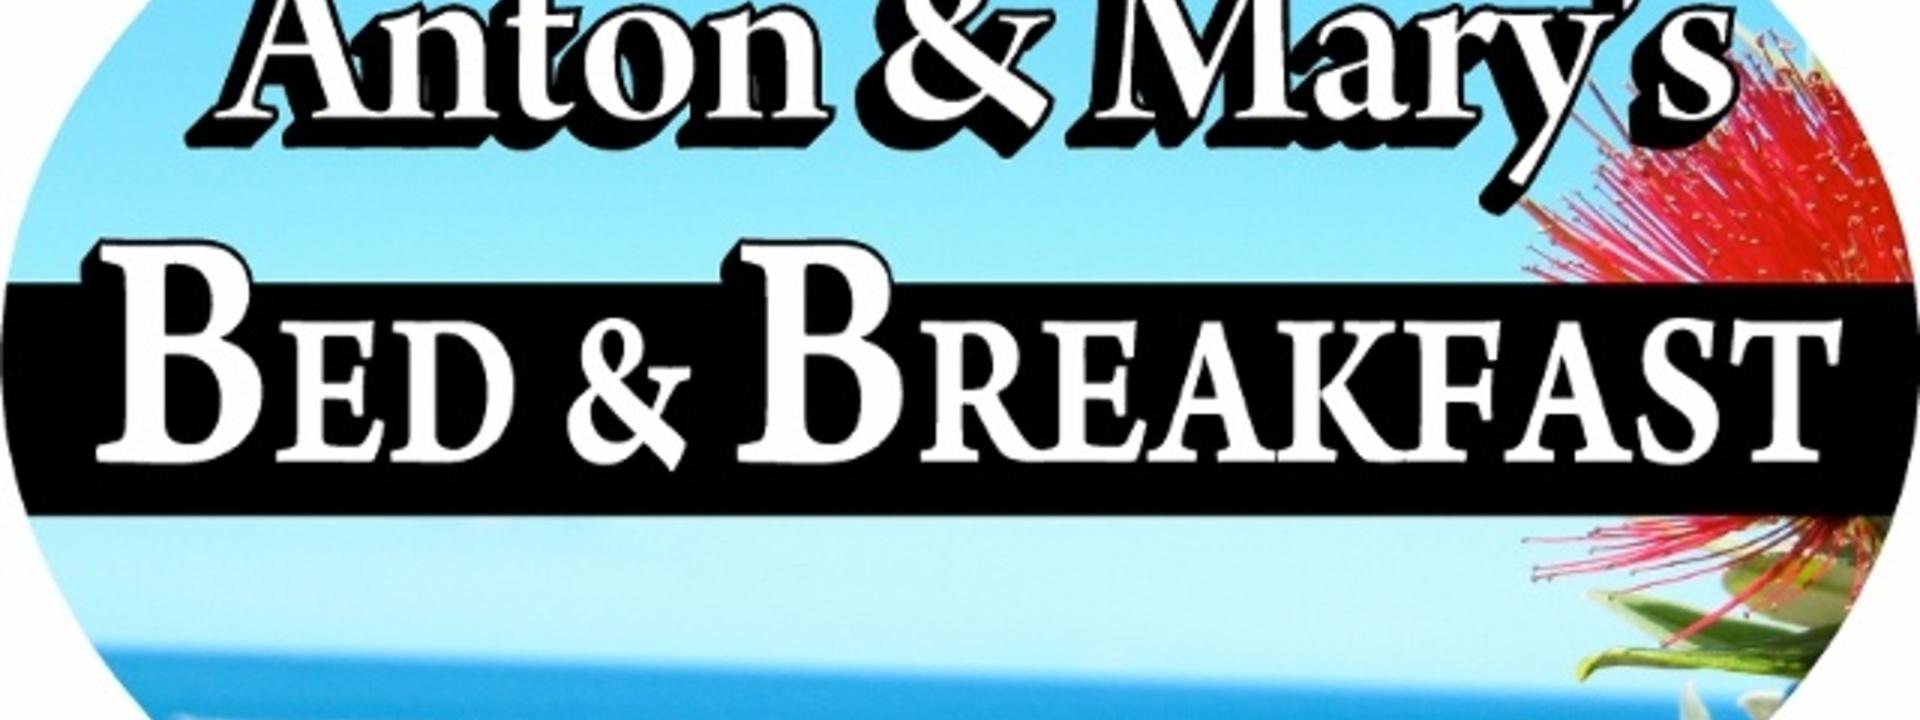 Logo: Anton & Mary's Bed & Breakfast